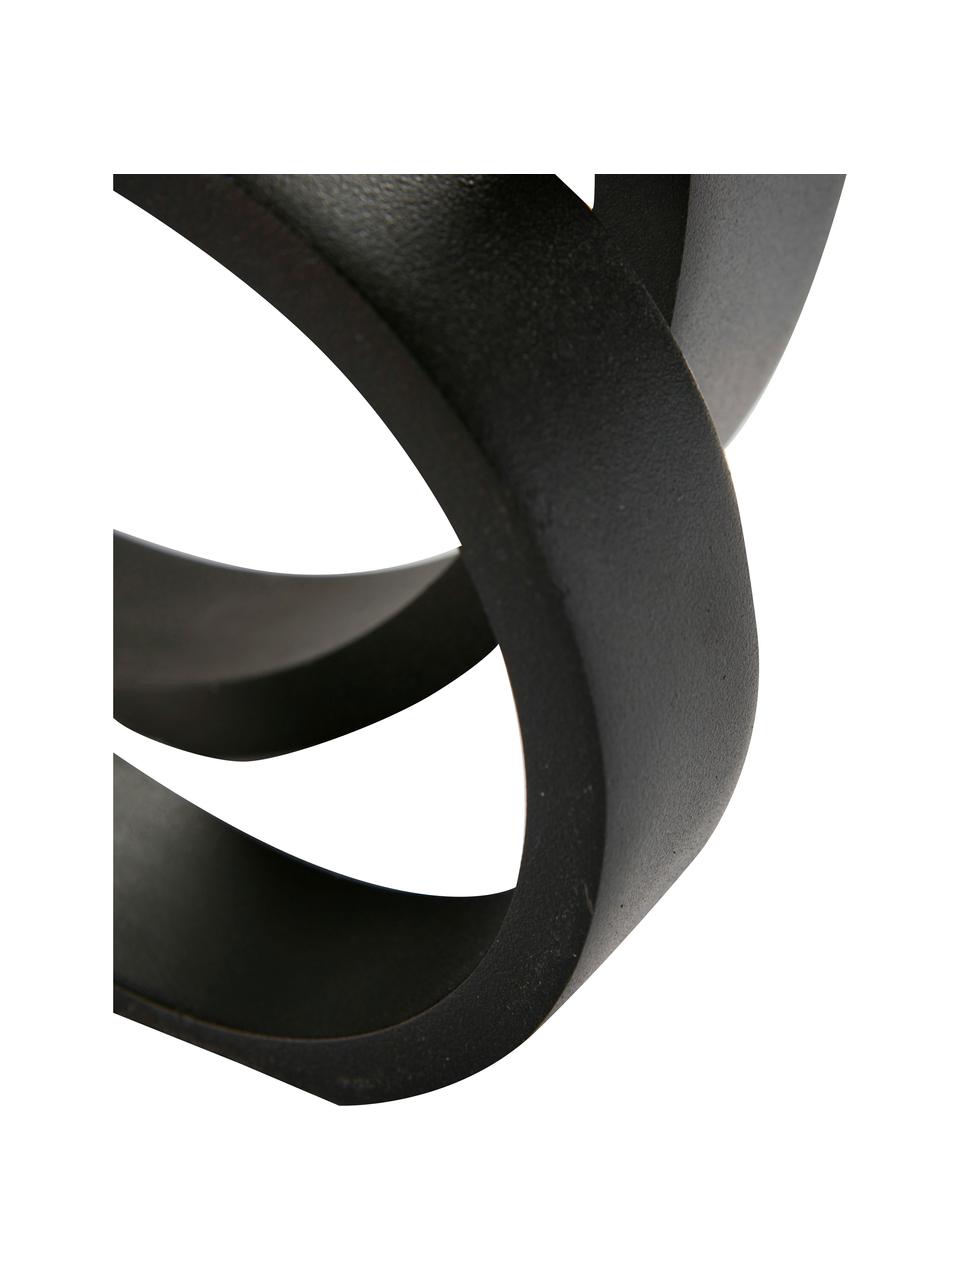 Dekoracja Ring, Aluminium powlekane, Czarny, S 14 x W 14 cm